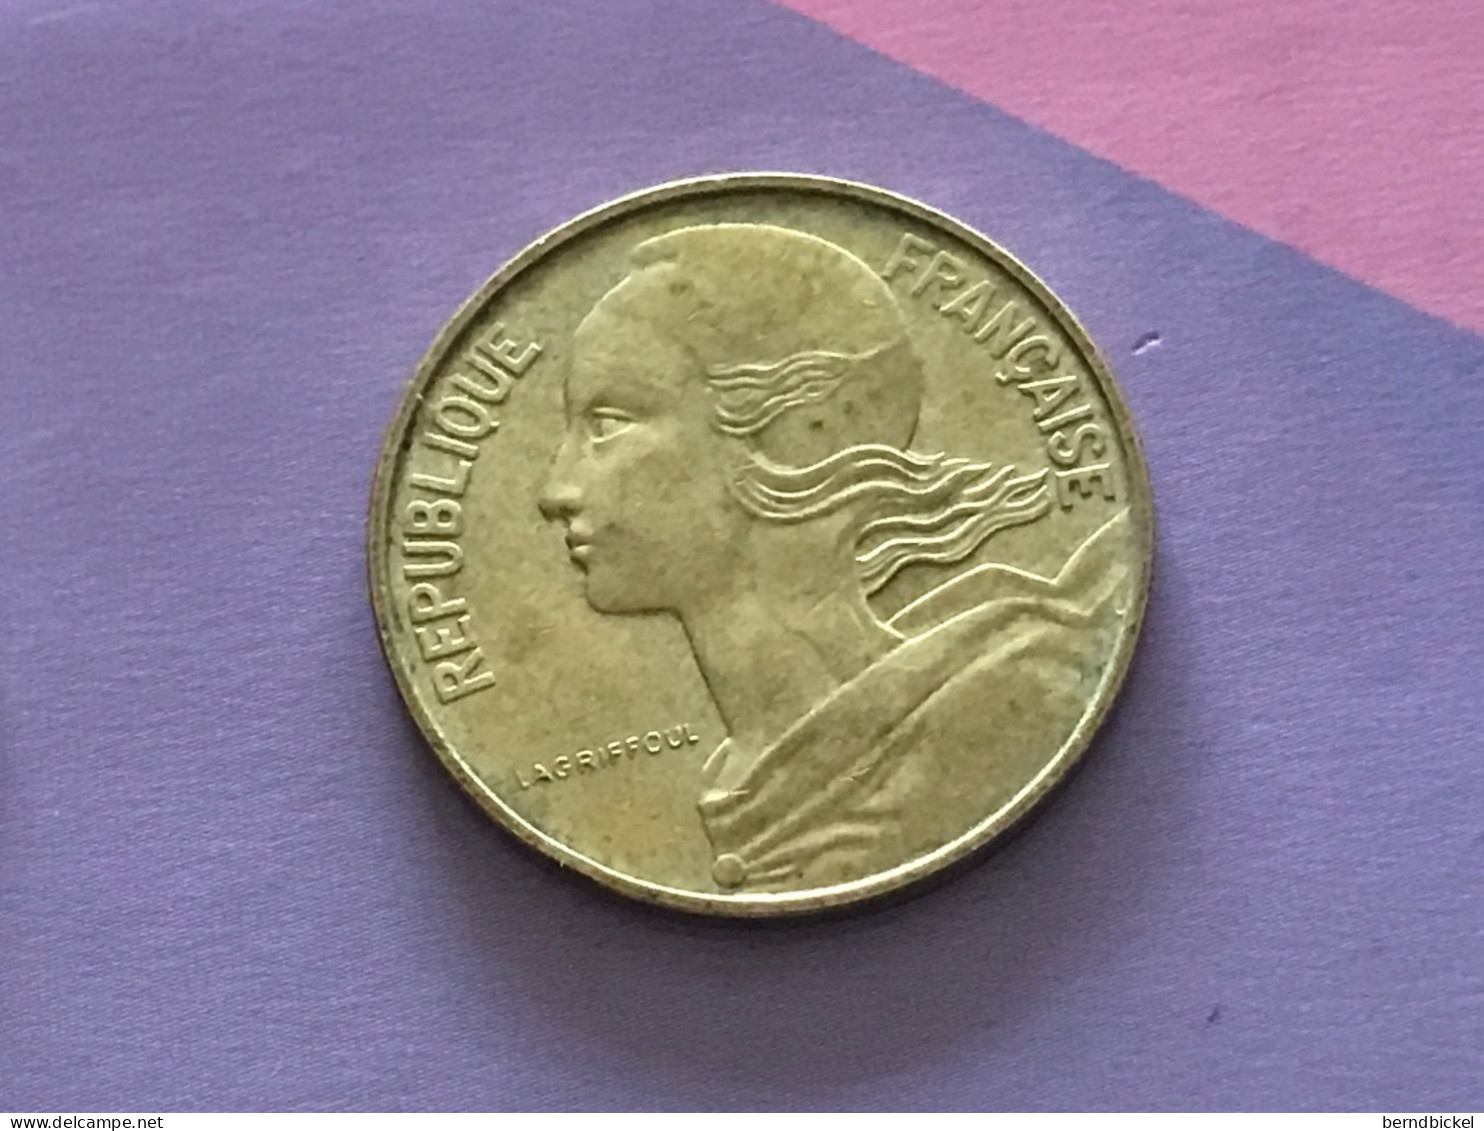 Münze Münzen Umlaufmünze Frankreich 10 Centimes 1983 - 10 Centimes